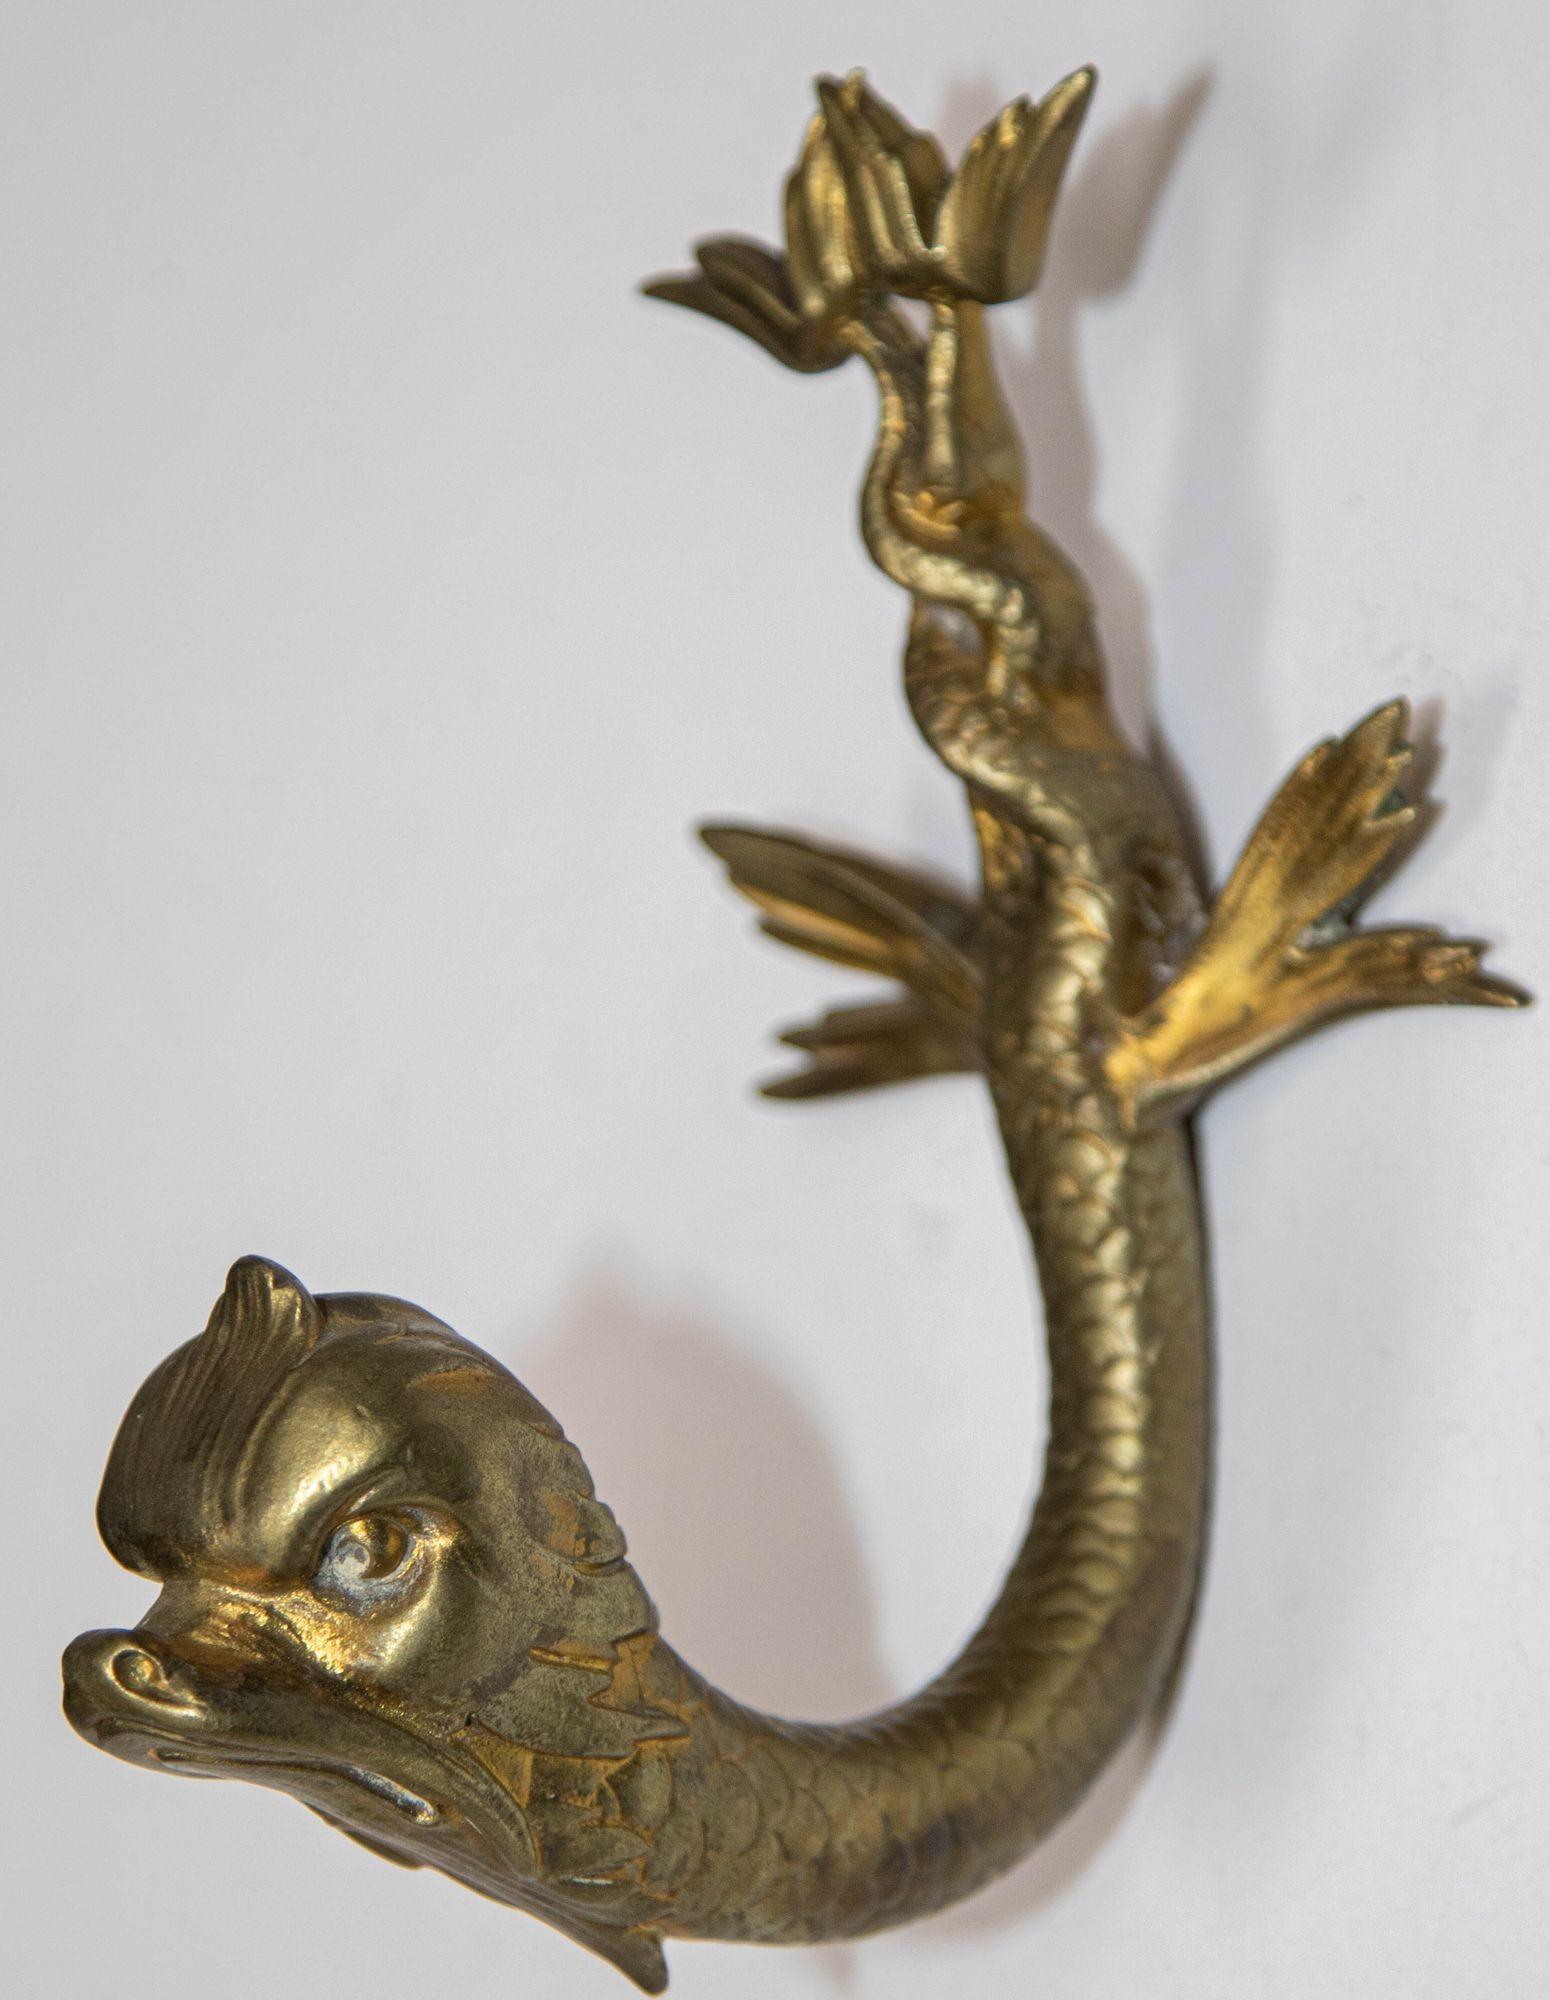 Support mural ou patère antique en bronze moulé pour poissons koï dauphins.
Patère en laiton moulé en forme de dauphin de Malte avec une représentation fantaisiste du visage du dauphin mythologique classique avec une queue de serpent de mer.
Ce